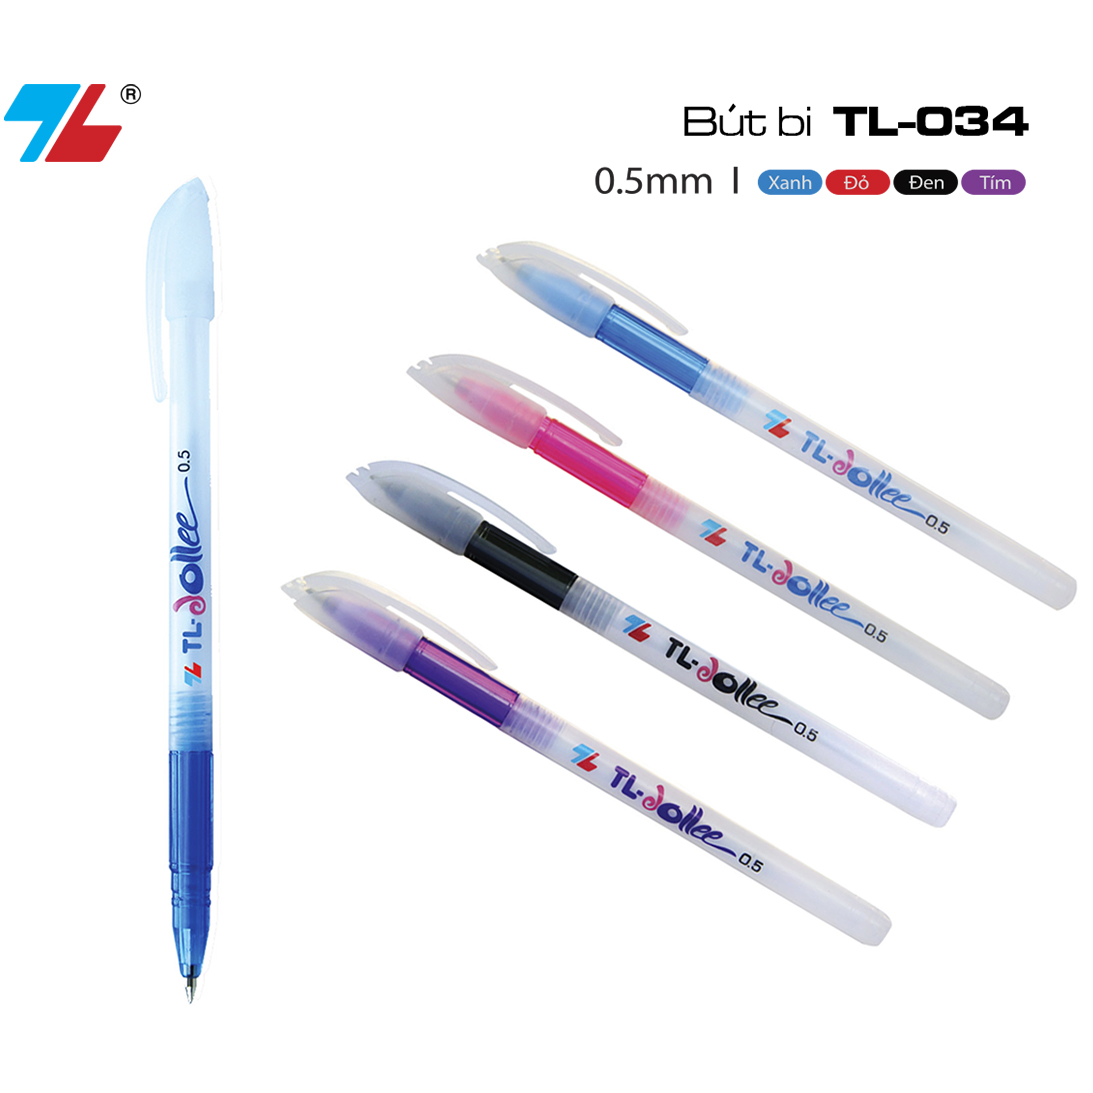 Combo 10 cây Bút Bi Thiên Long TL-034 – Flexoffice.com - Tập đoàn Thiên Long